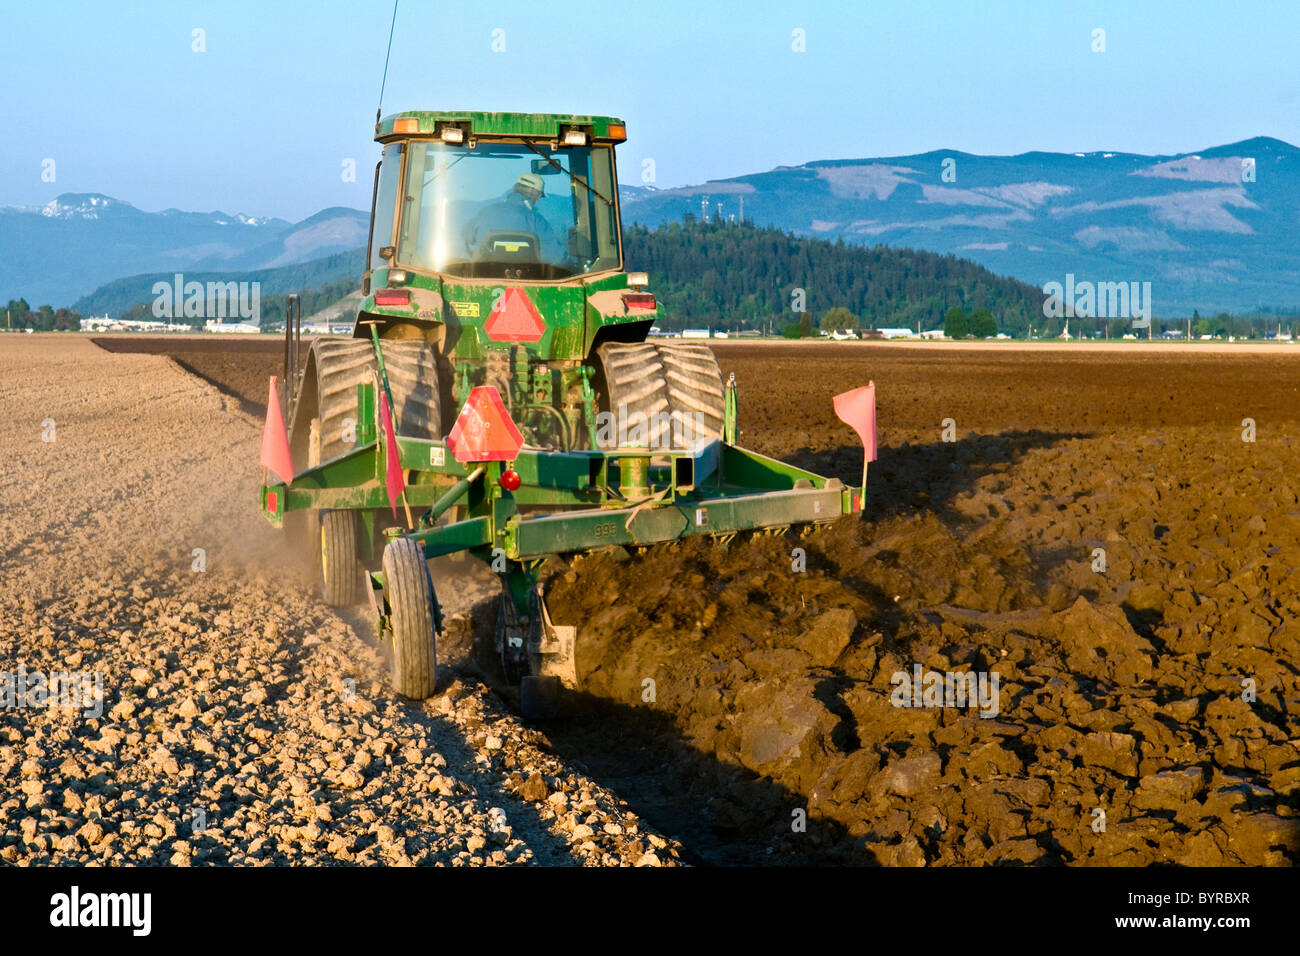 Un tracteur à chenilles John Deere tirant une charrue réversible prépare un champ pour la plantation de pommes de terre / près de Burlington, Vermont, USA Banque D'Images